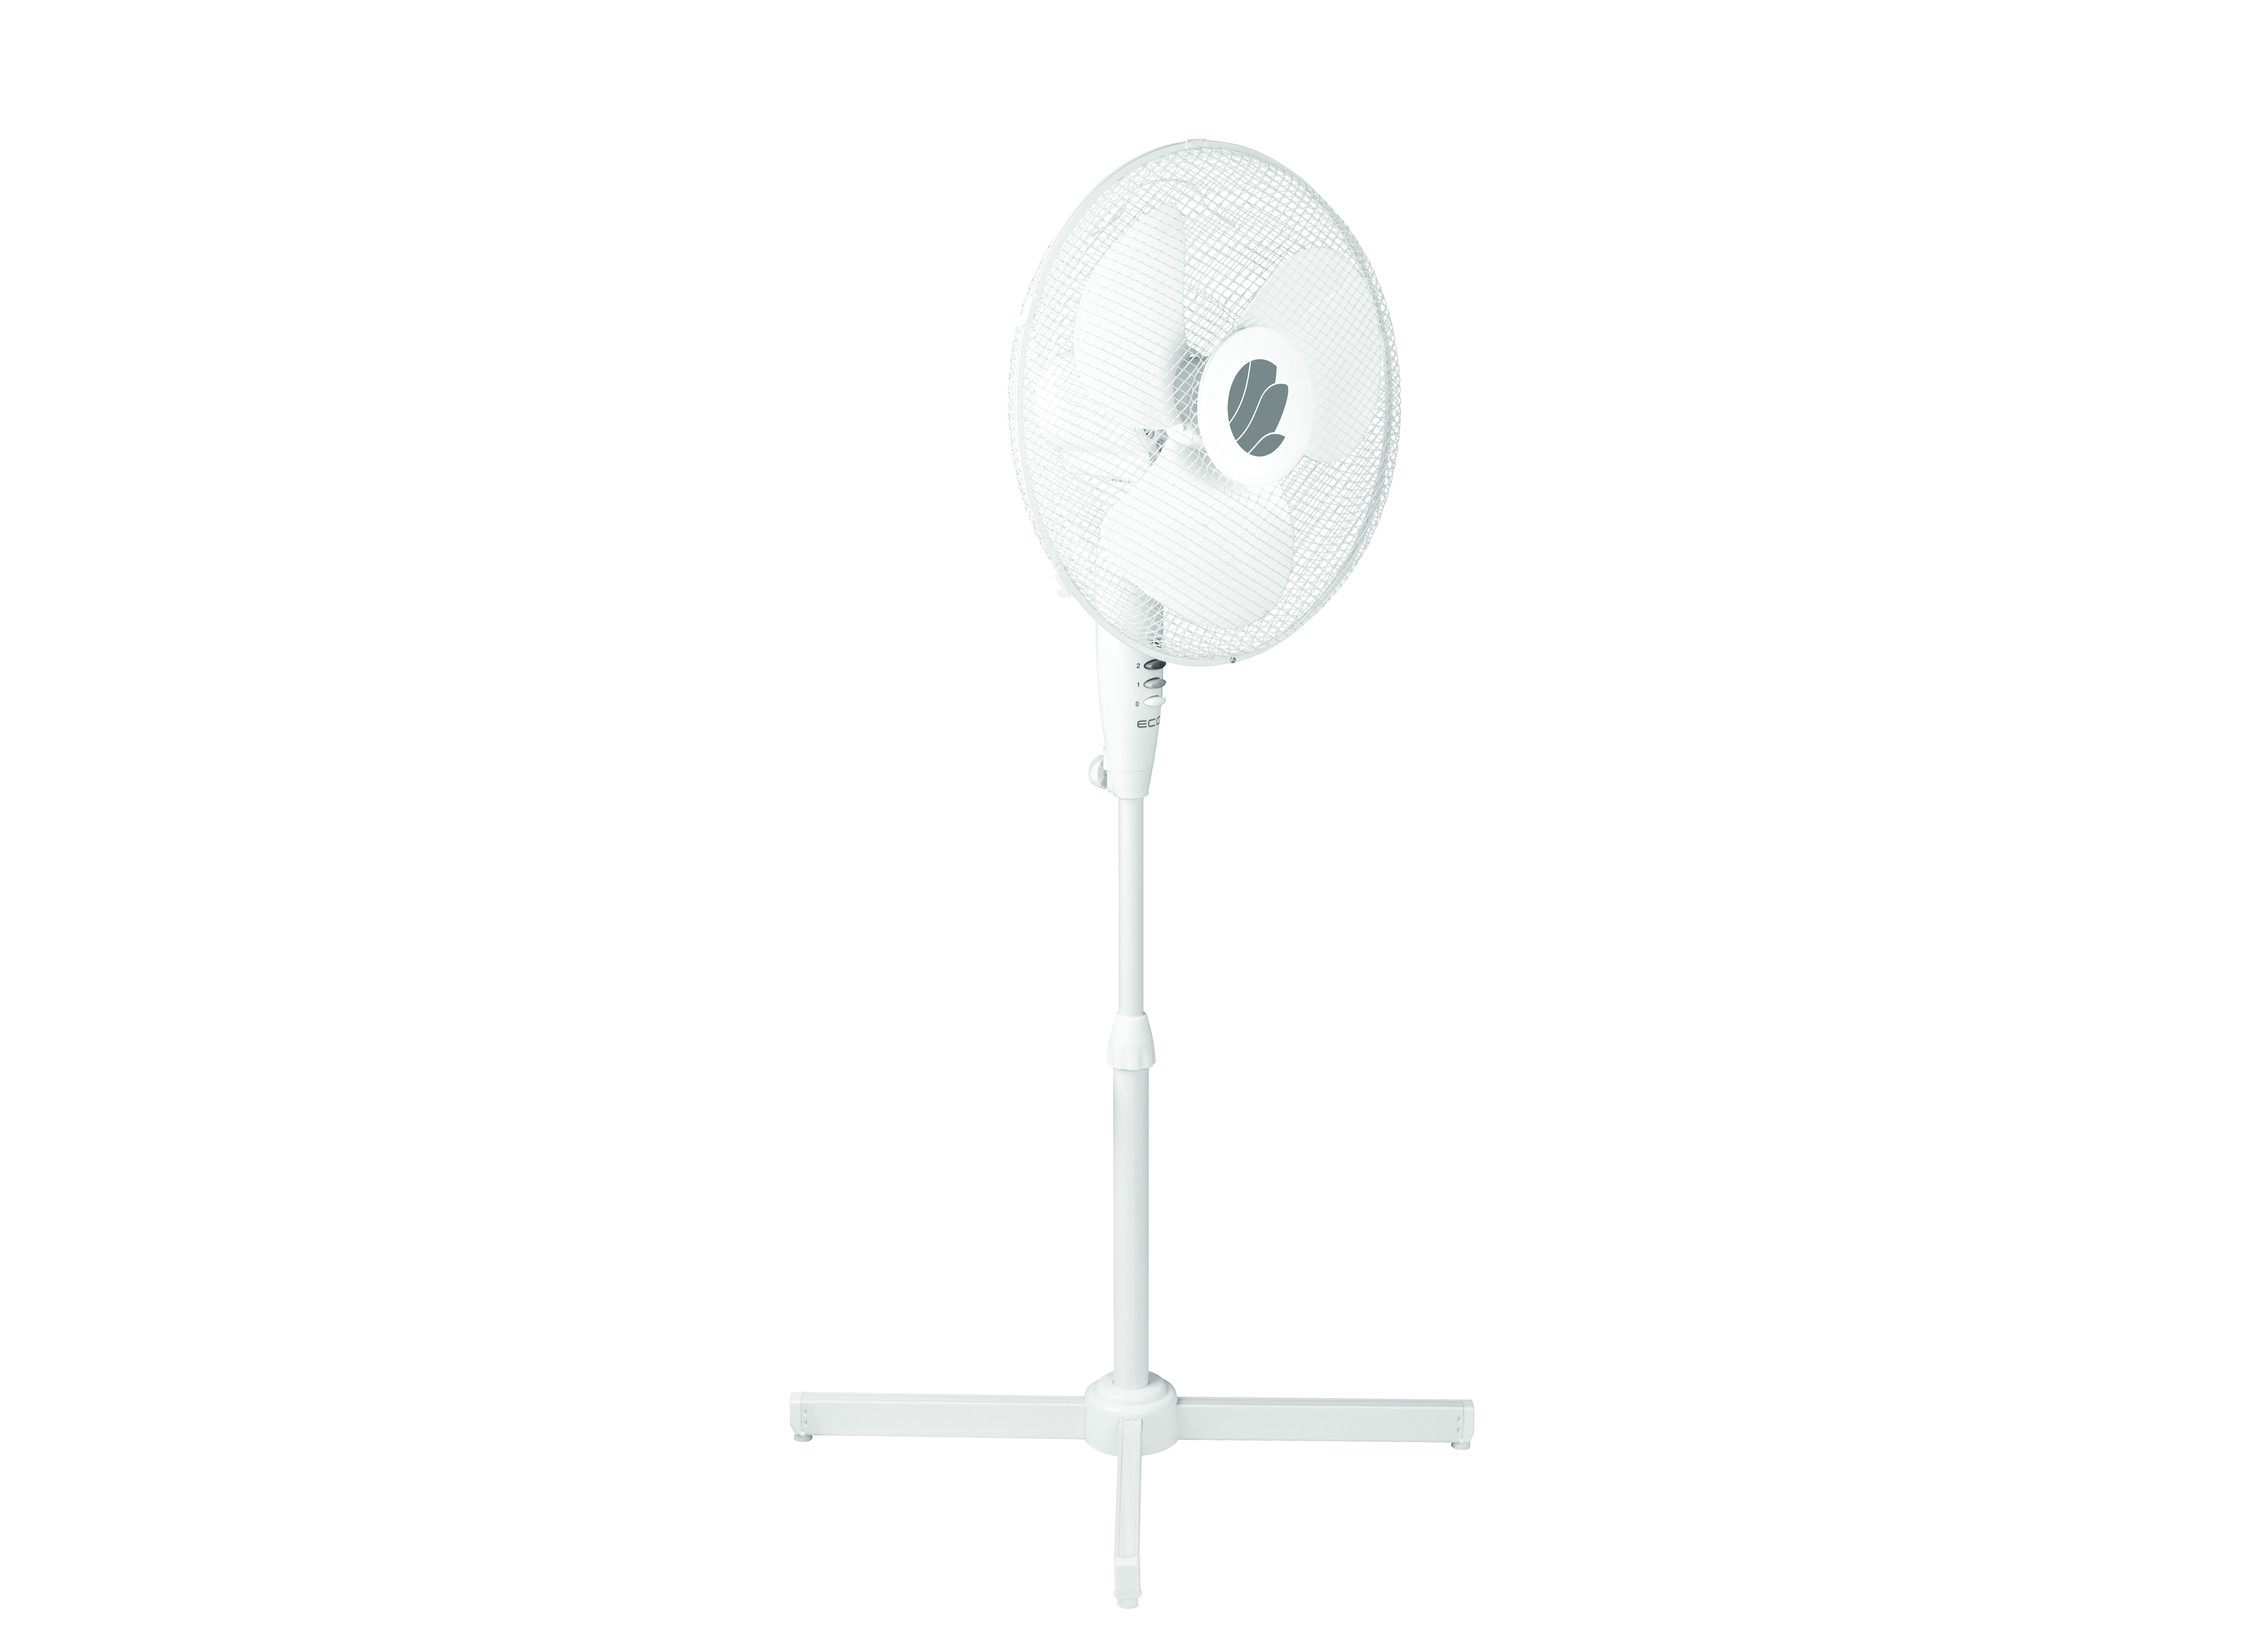 Weiß | stille 40cm Zeer FS | ventilator Standventilator 40a (50 ECG | | Watt) Doorsnee werking